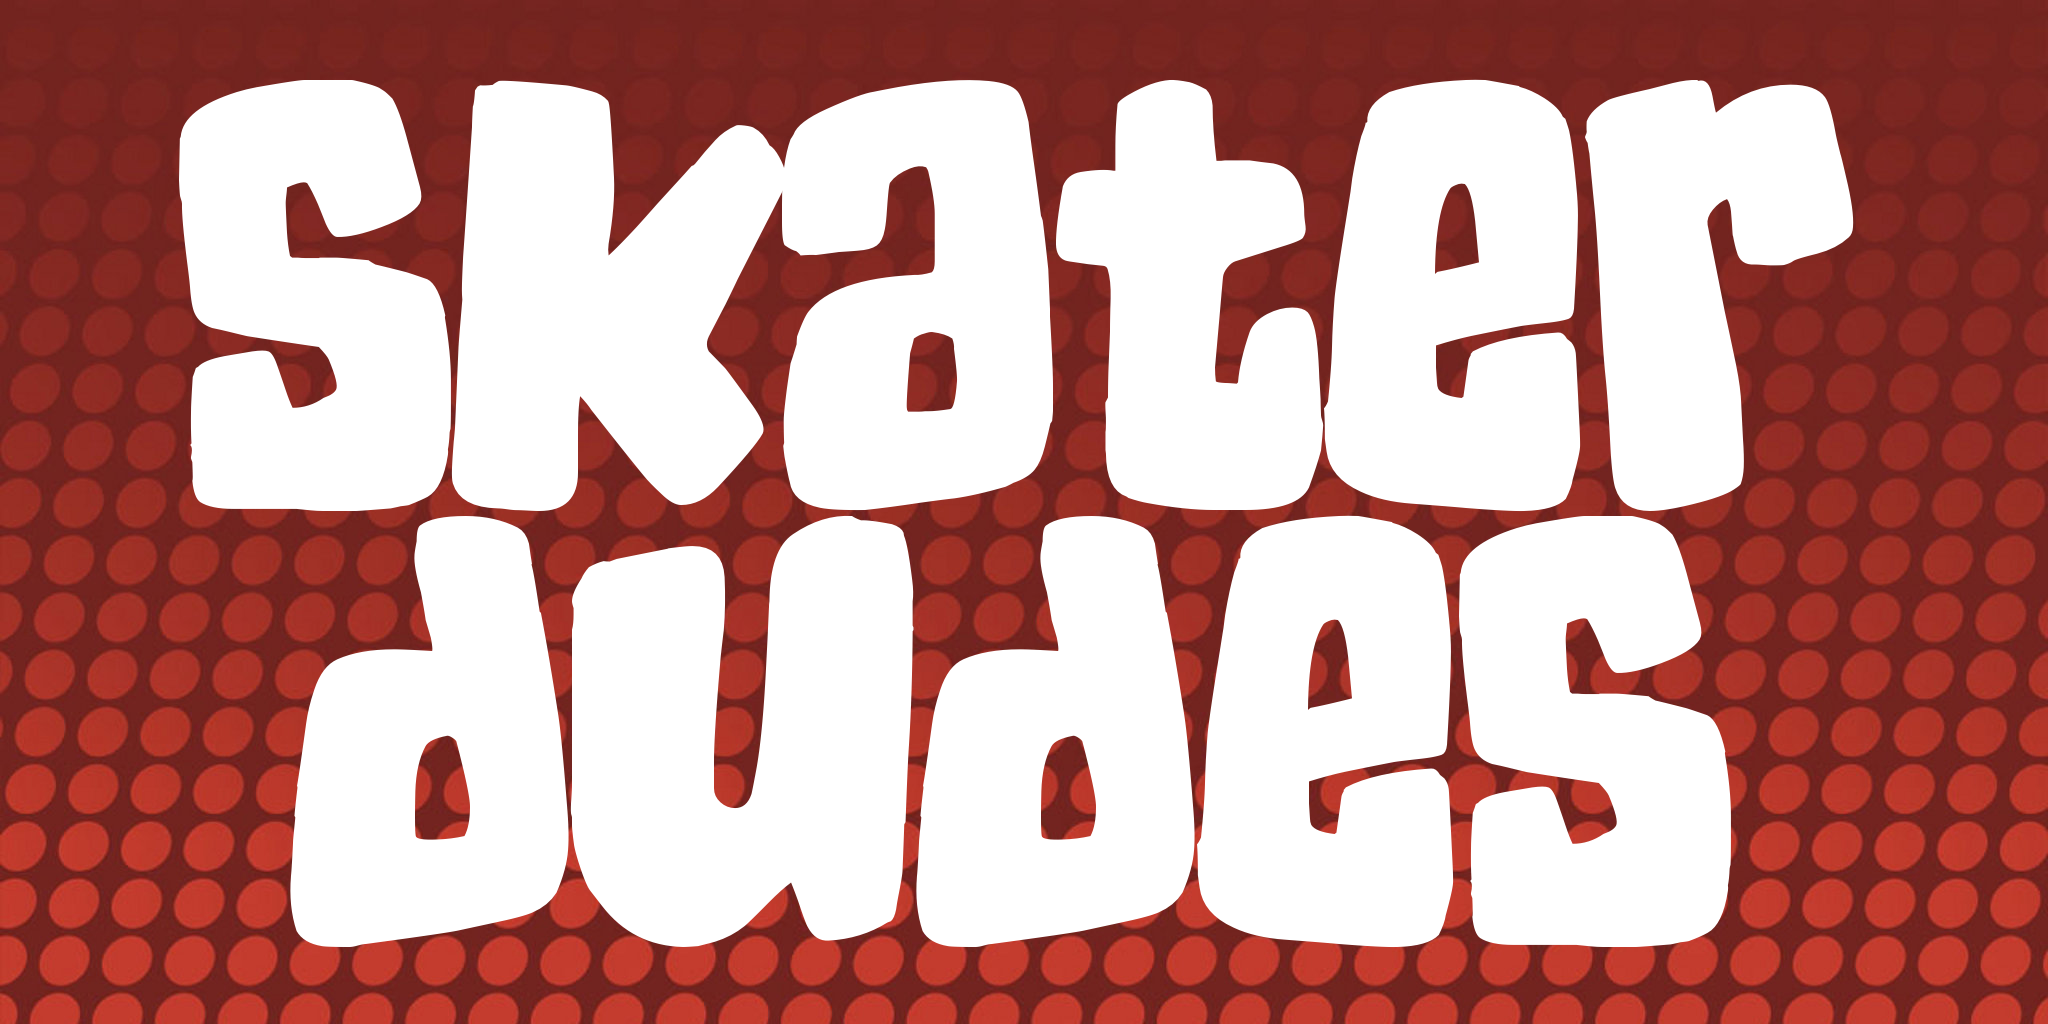 Skater Dudes Font Free Download And Similar Fonts Fontget